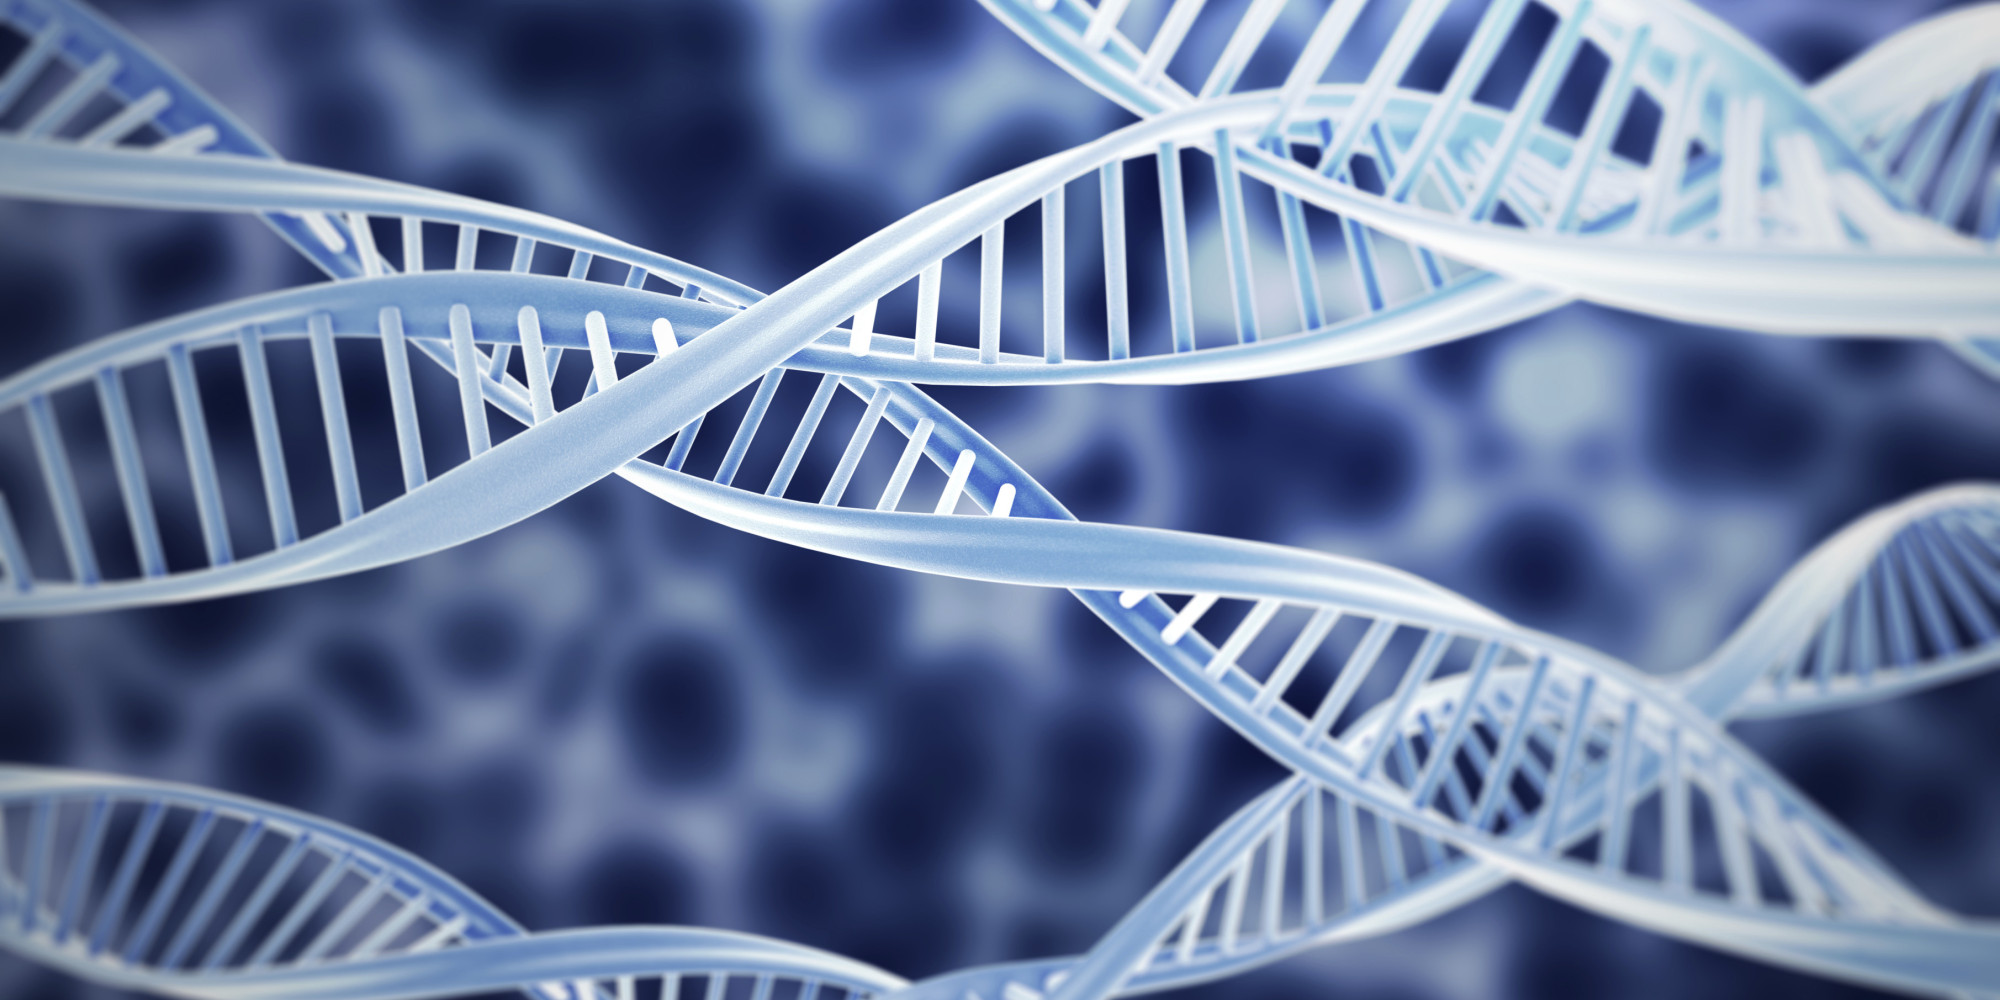 Ποιος παράγοντας καταστρέφει το DNA;